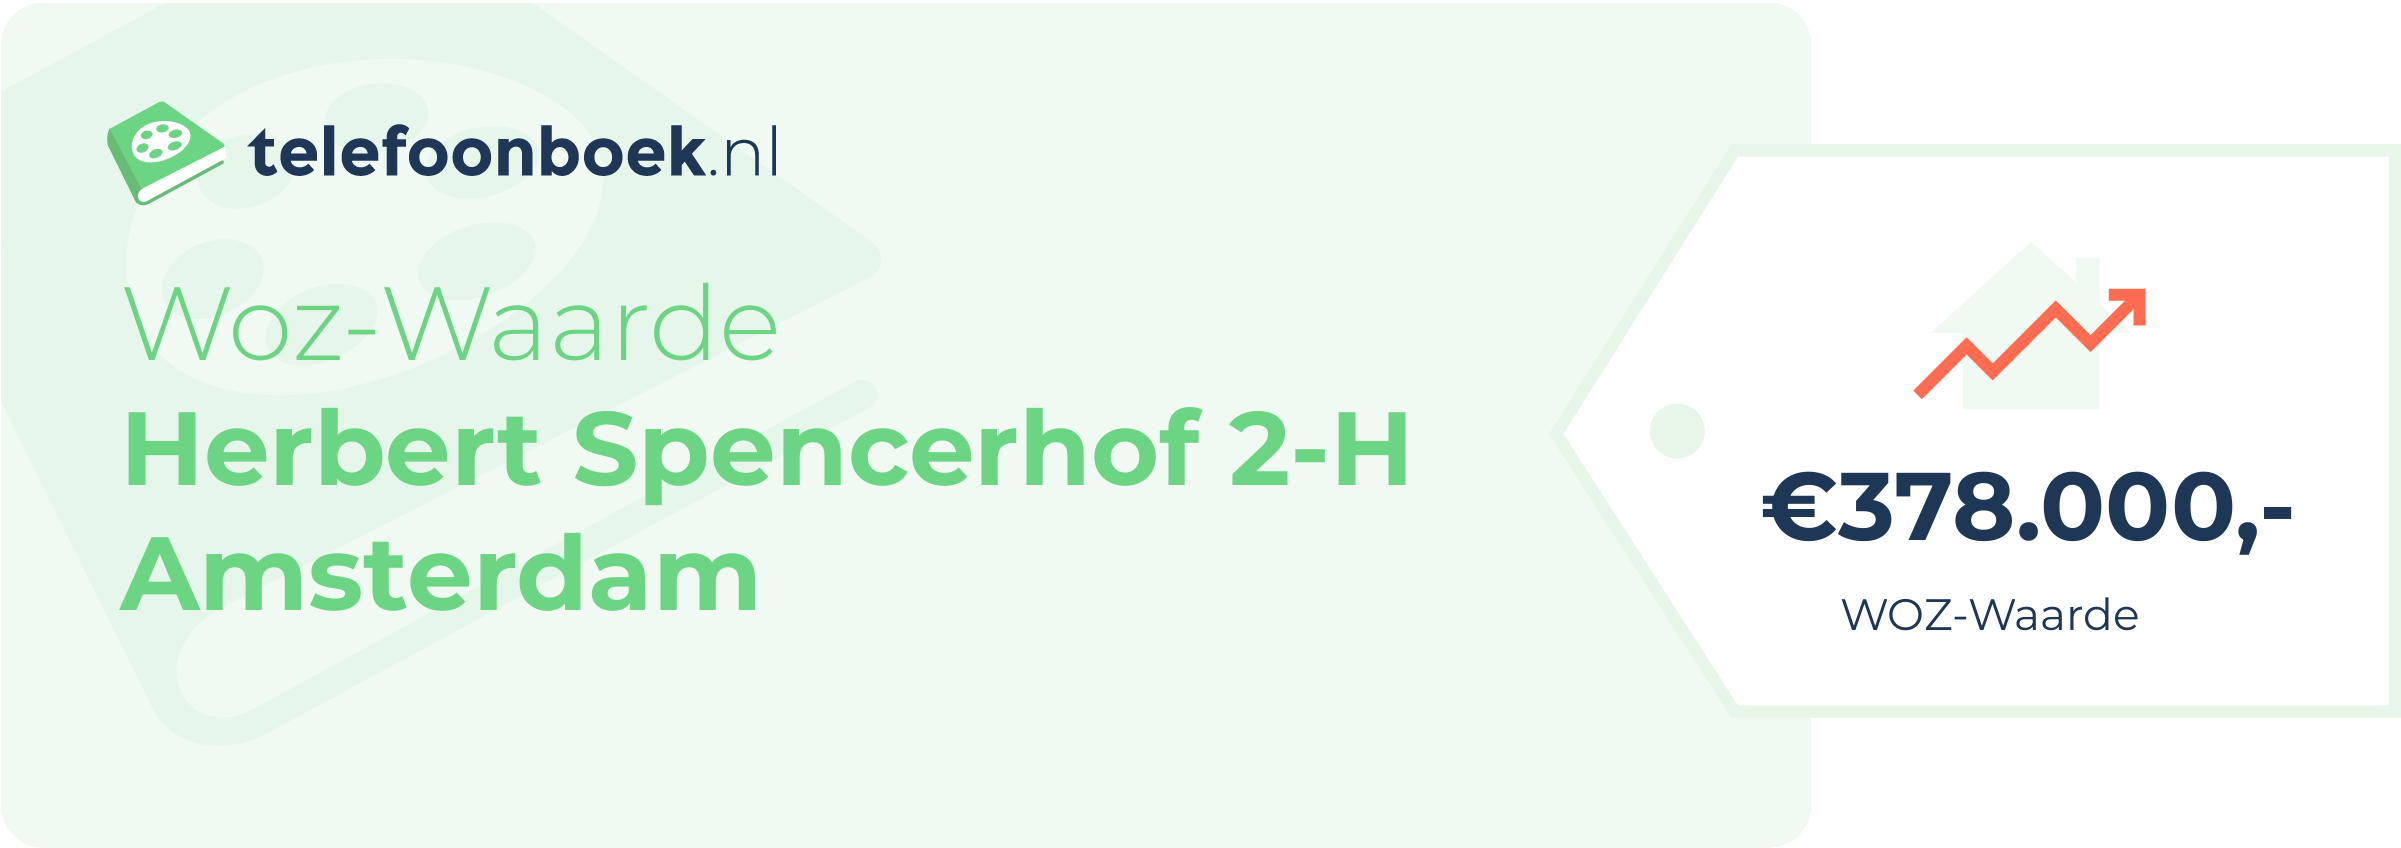 WOZ-waarde Herbert Spencerhof 2-H Amsterdam